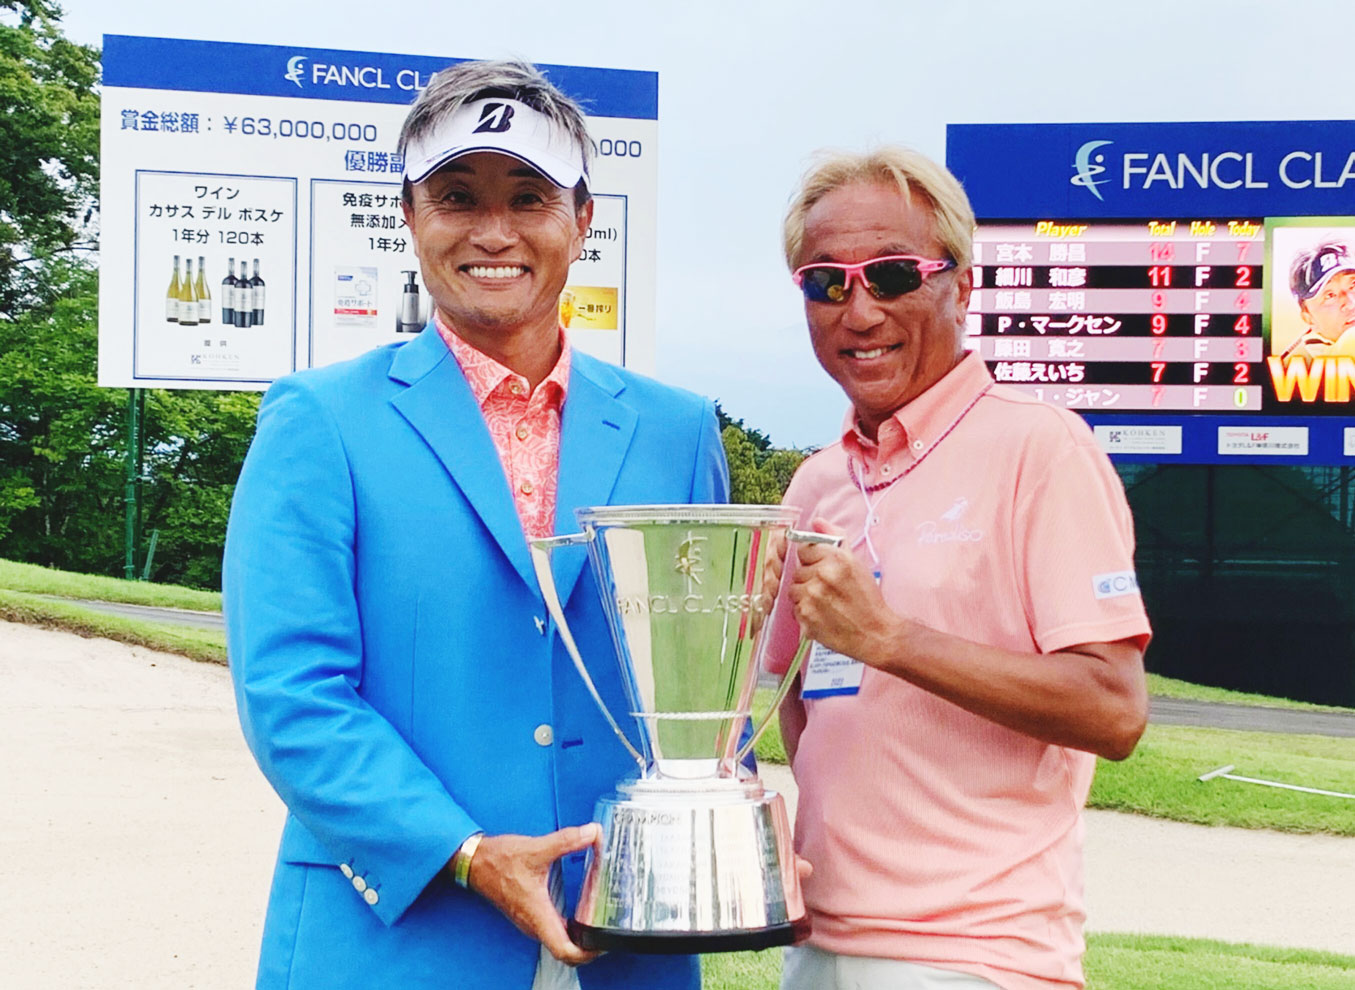 2023 ファンケルクラシック-宮本勝昌プロ、PGAシニアツアー初優勝